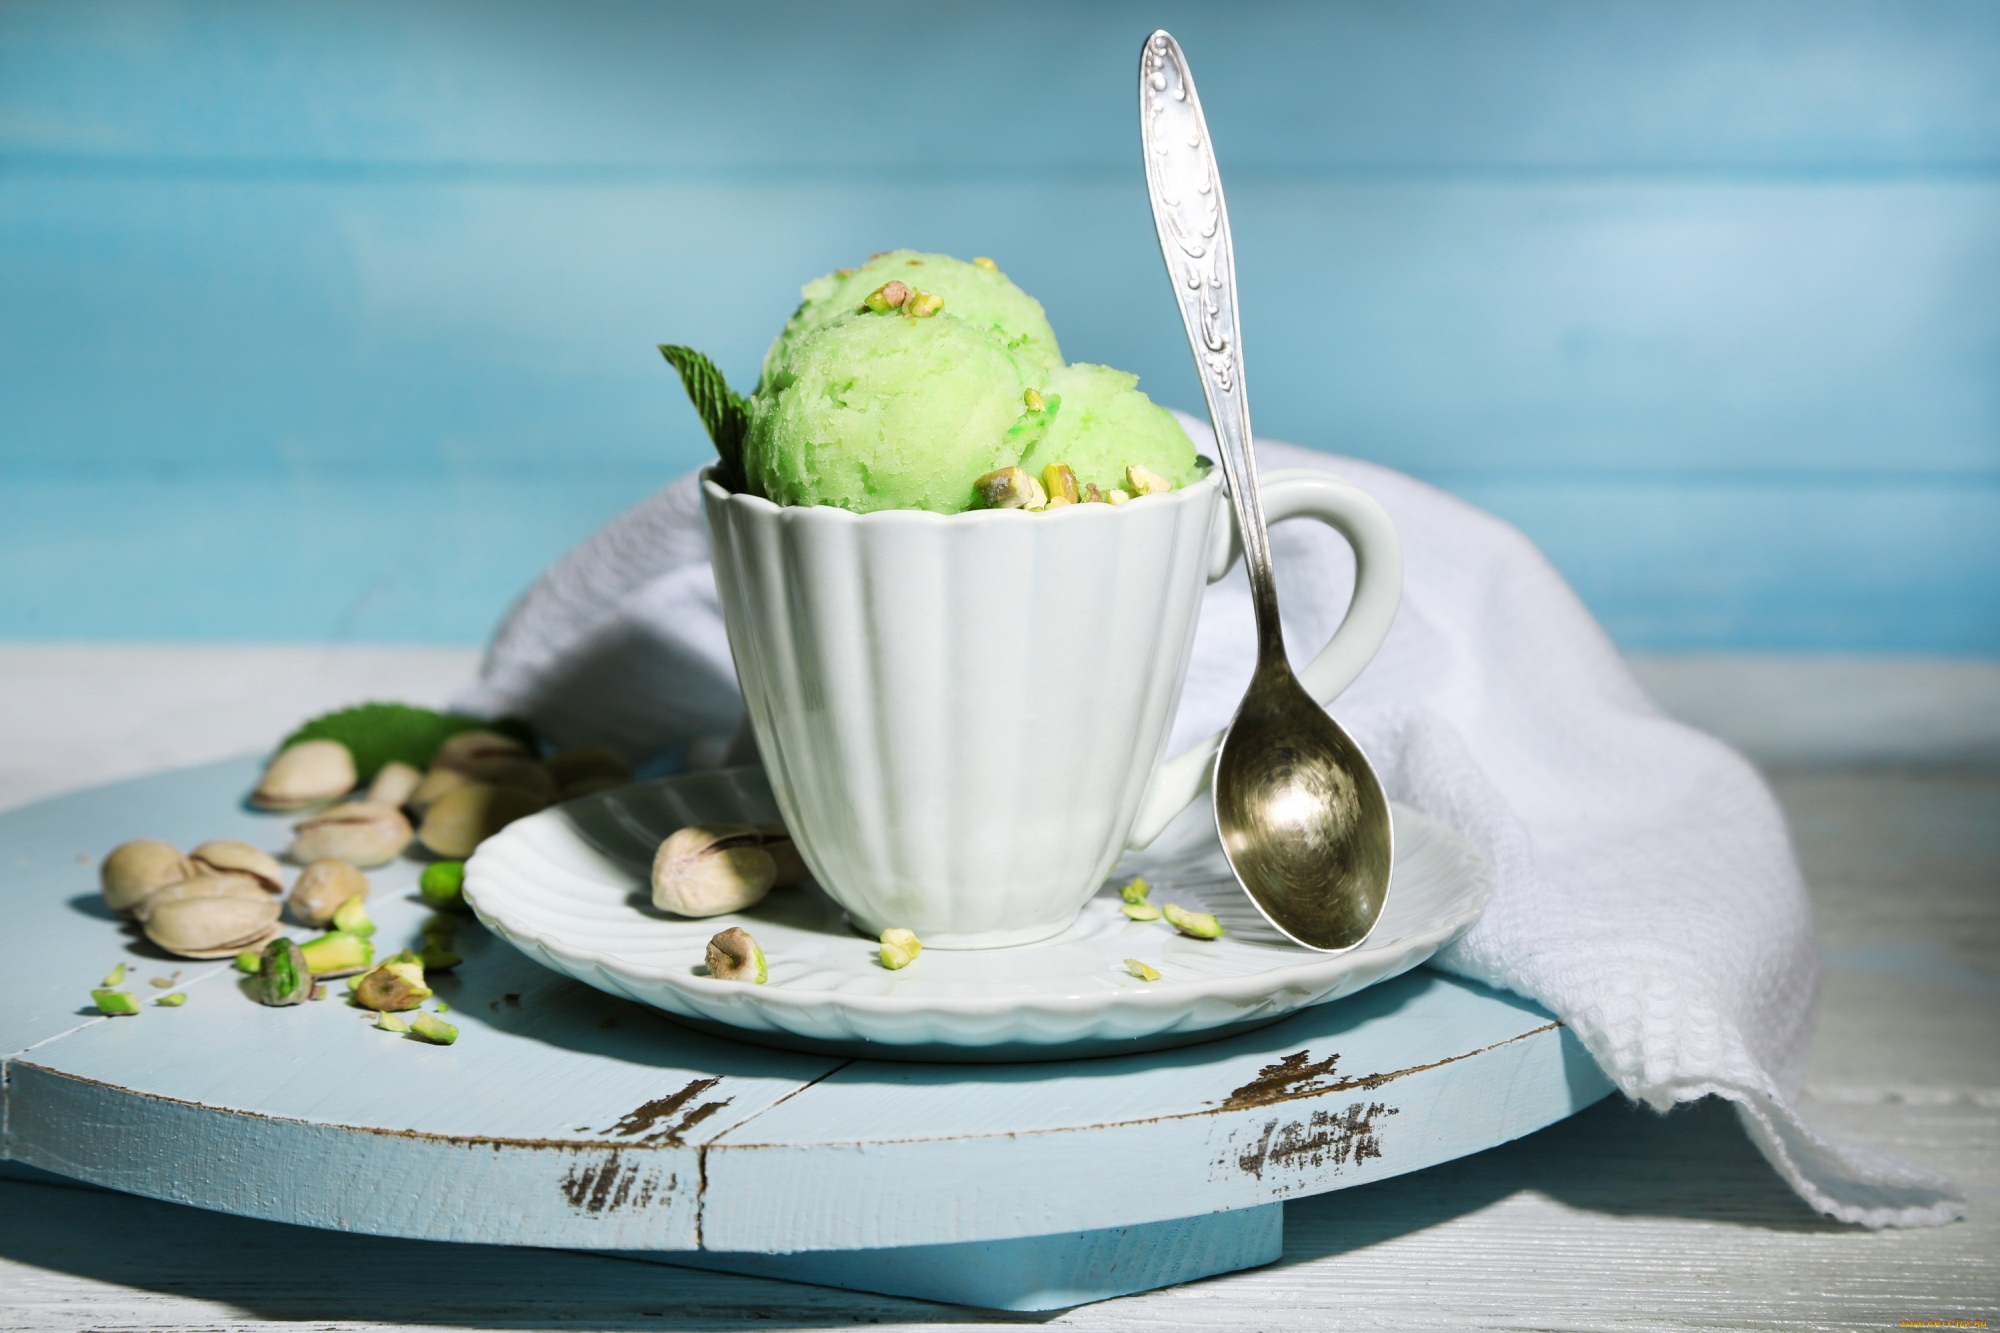 Pistachio Ice-cream